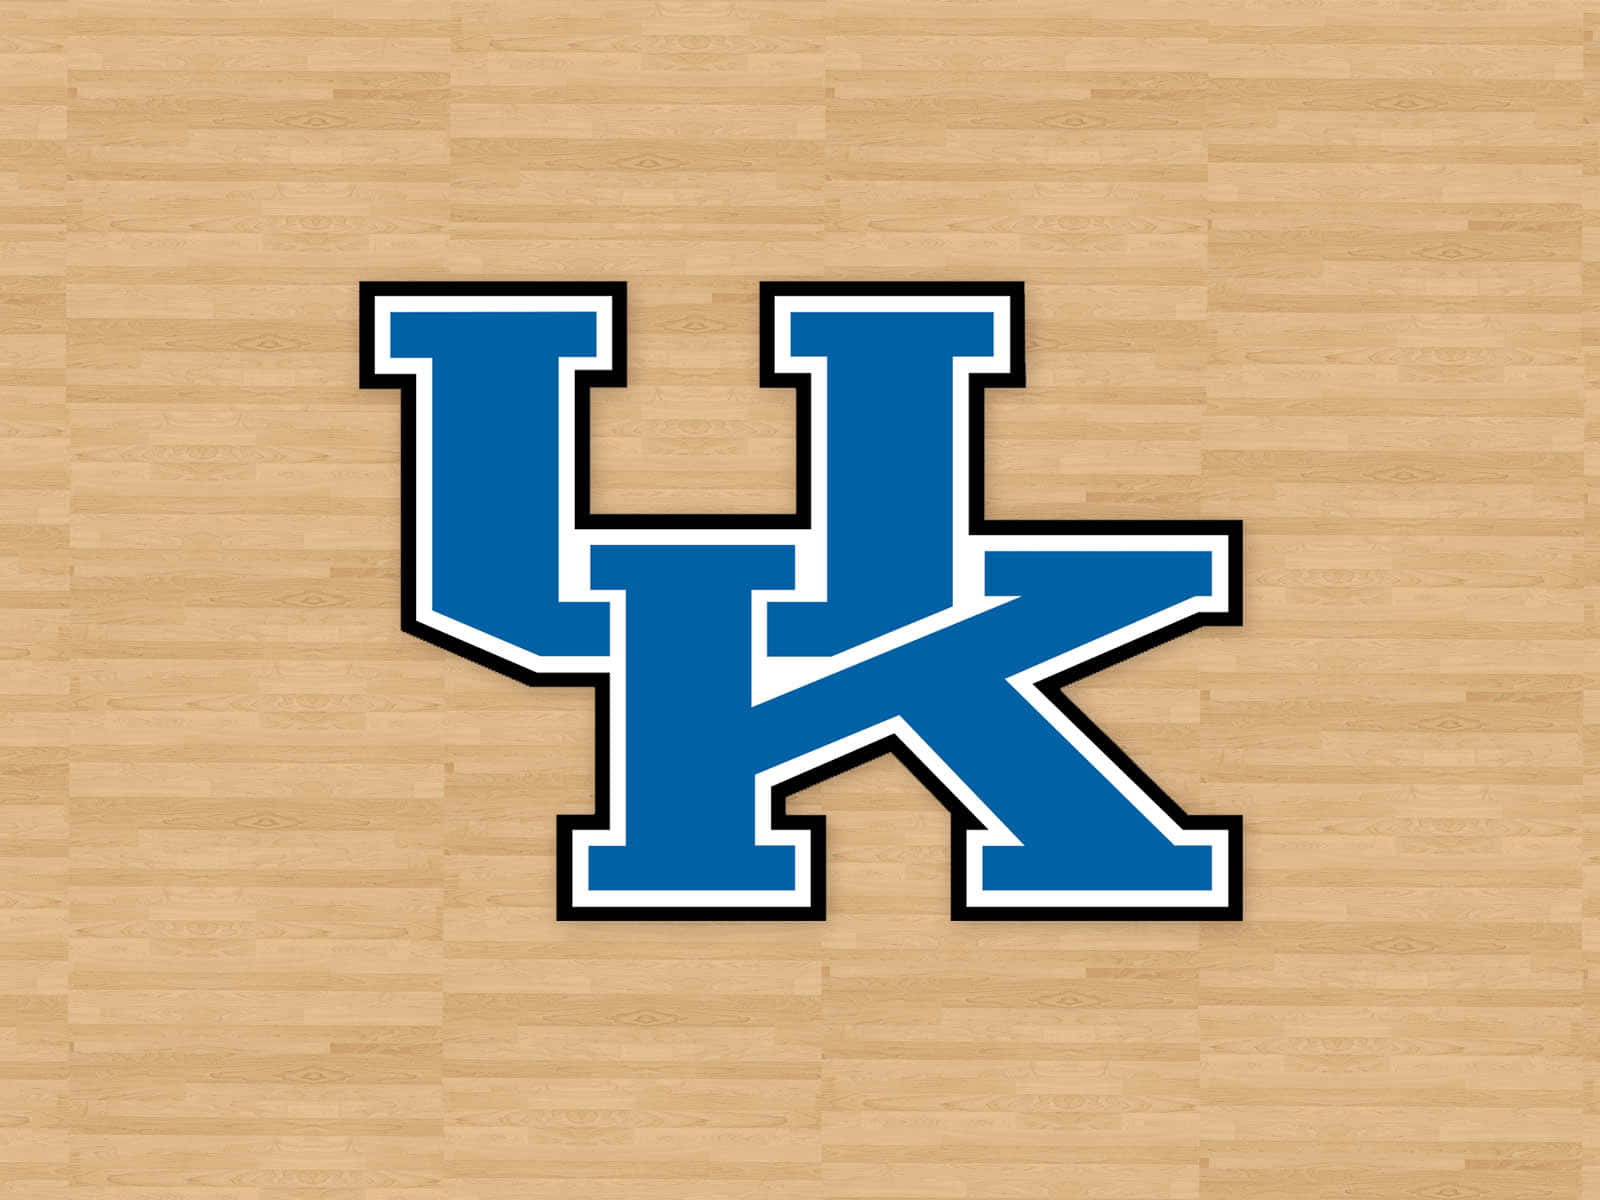 Kentucky Wildcats Basketball Logo On A Wooden Floor Wallpaper